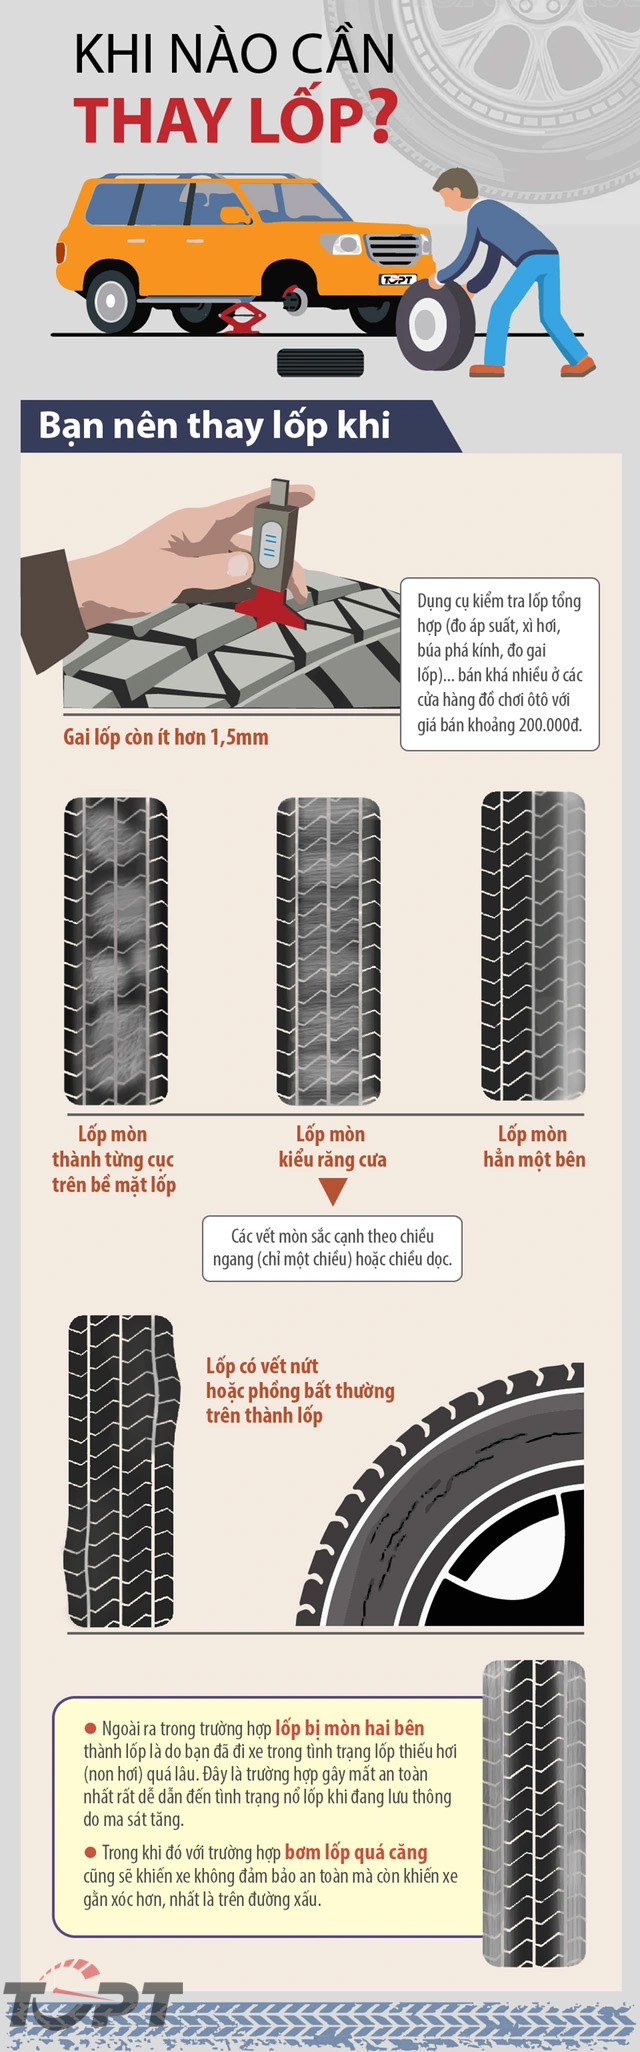 Kinh nghiệm lái xe: Bạn có biết tuổi thọ của lốp là bao lâu và khi nào cần phải thay lốp??? - Ảnh 2.